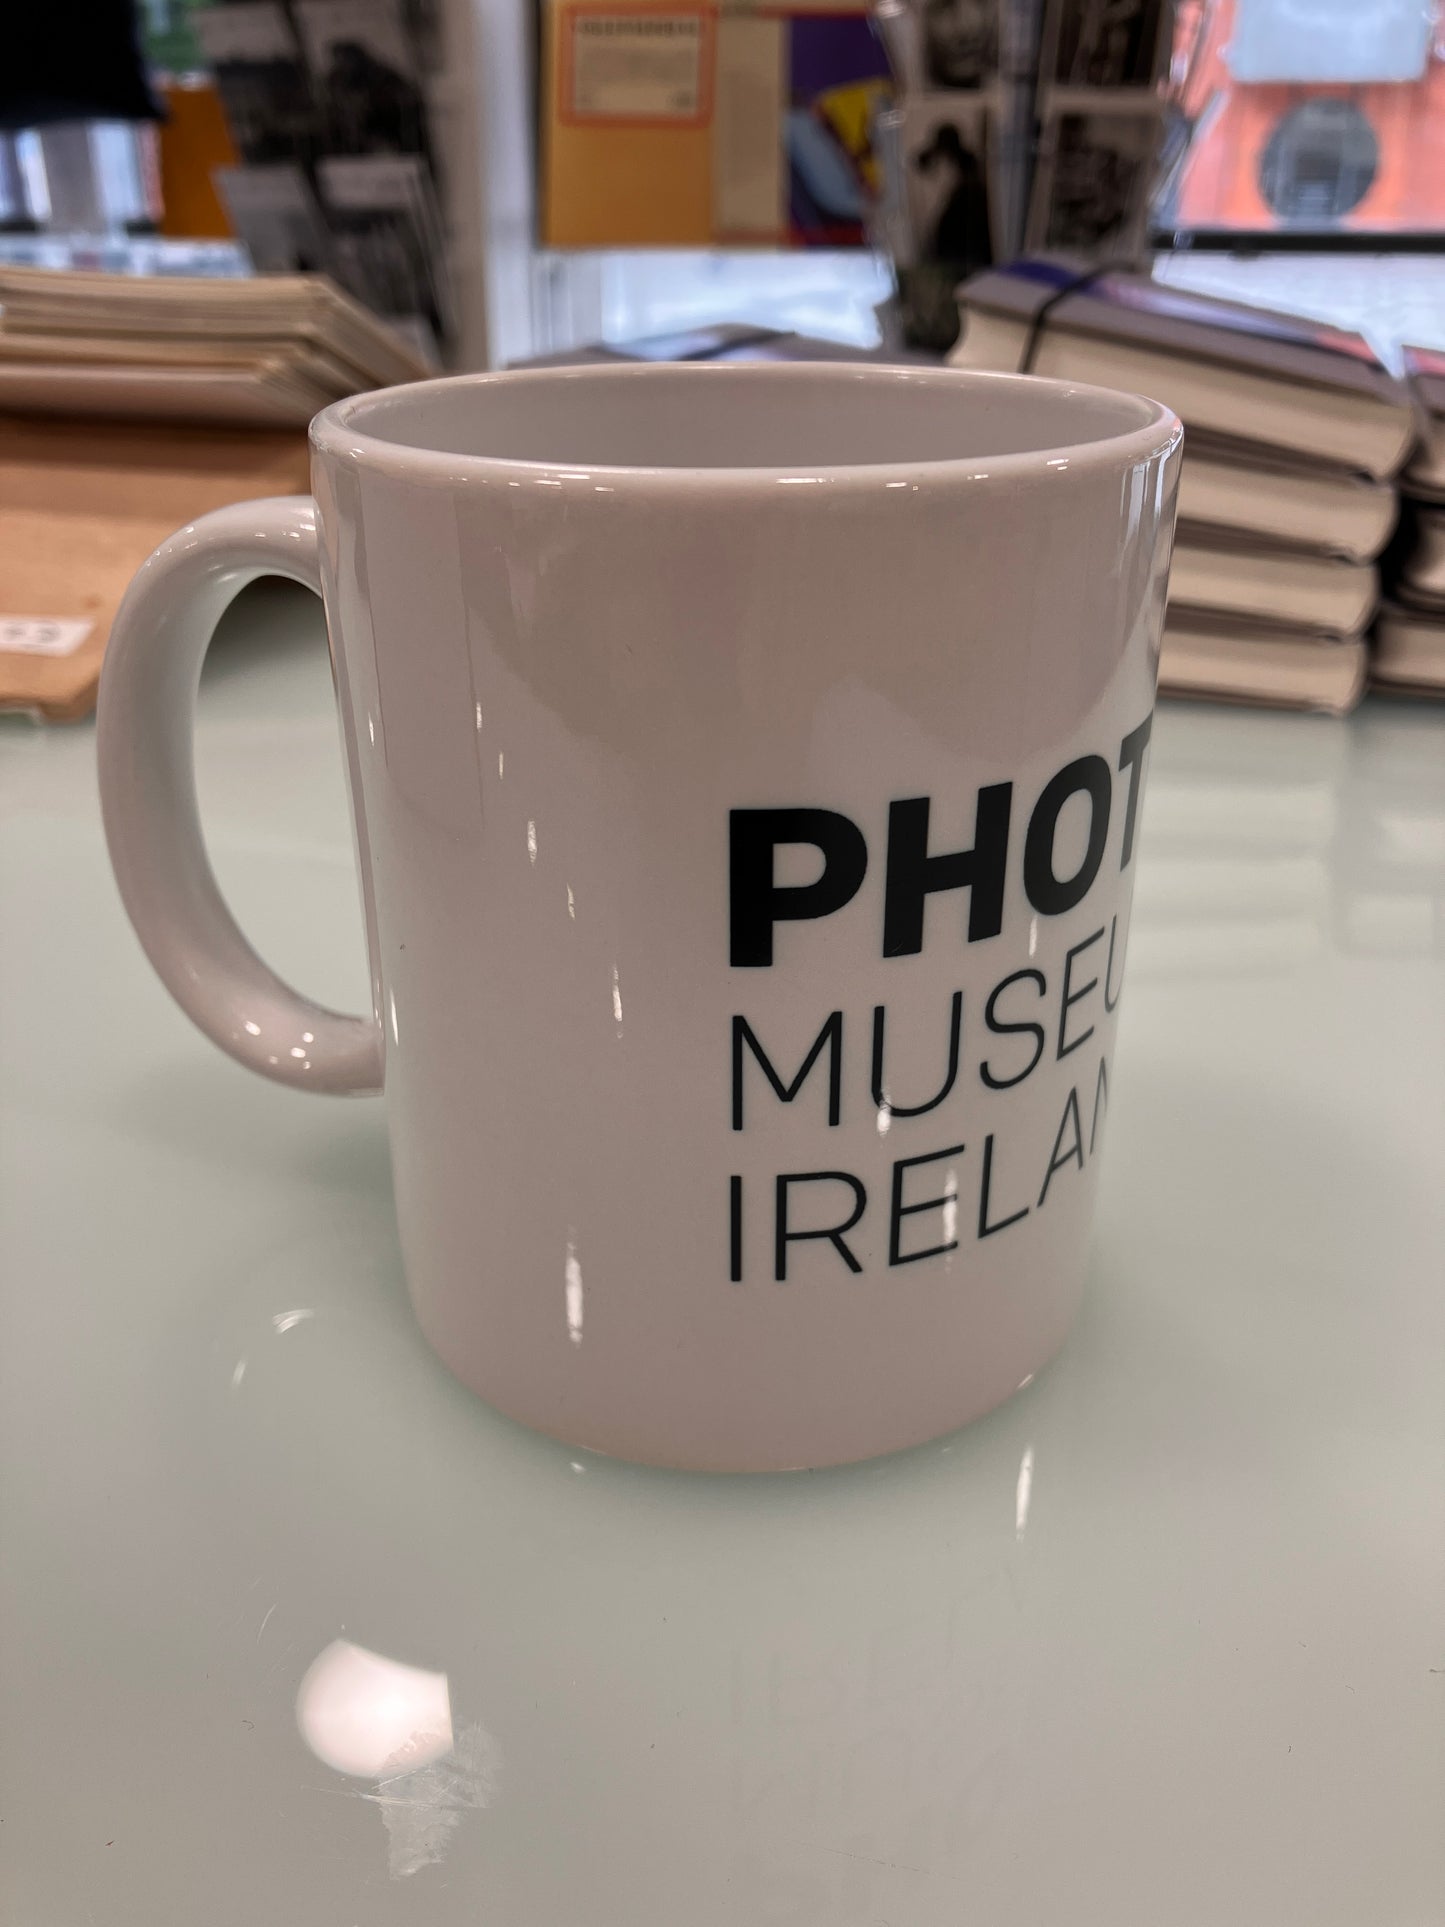 Photo Museum Ireland Souvenir Mug